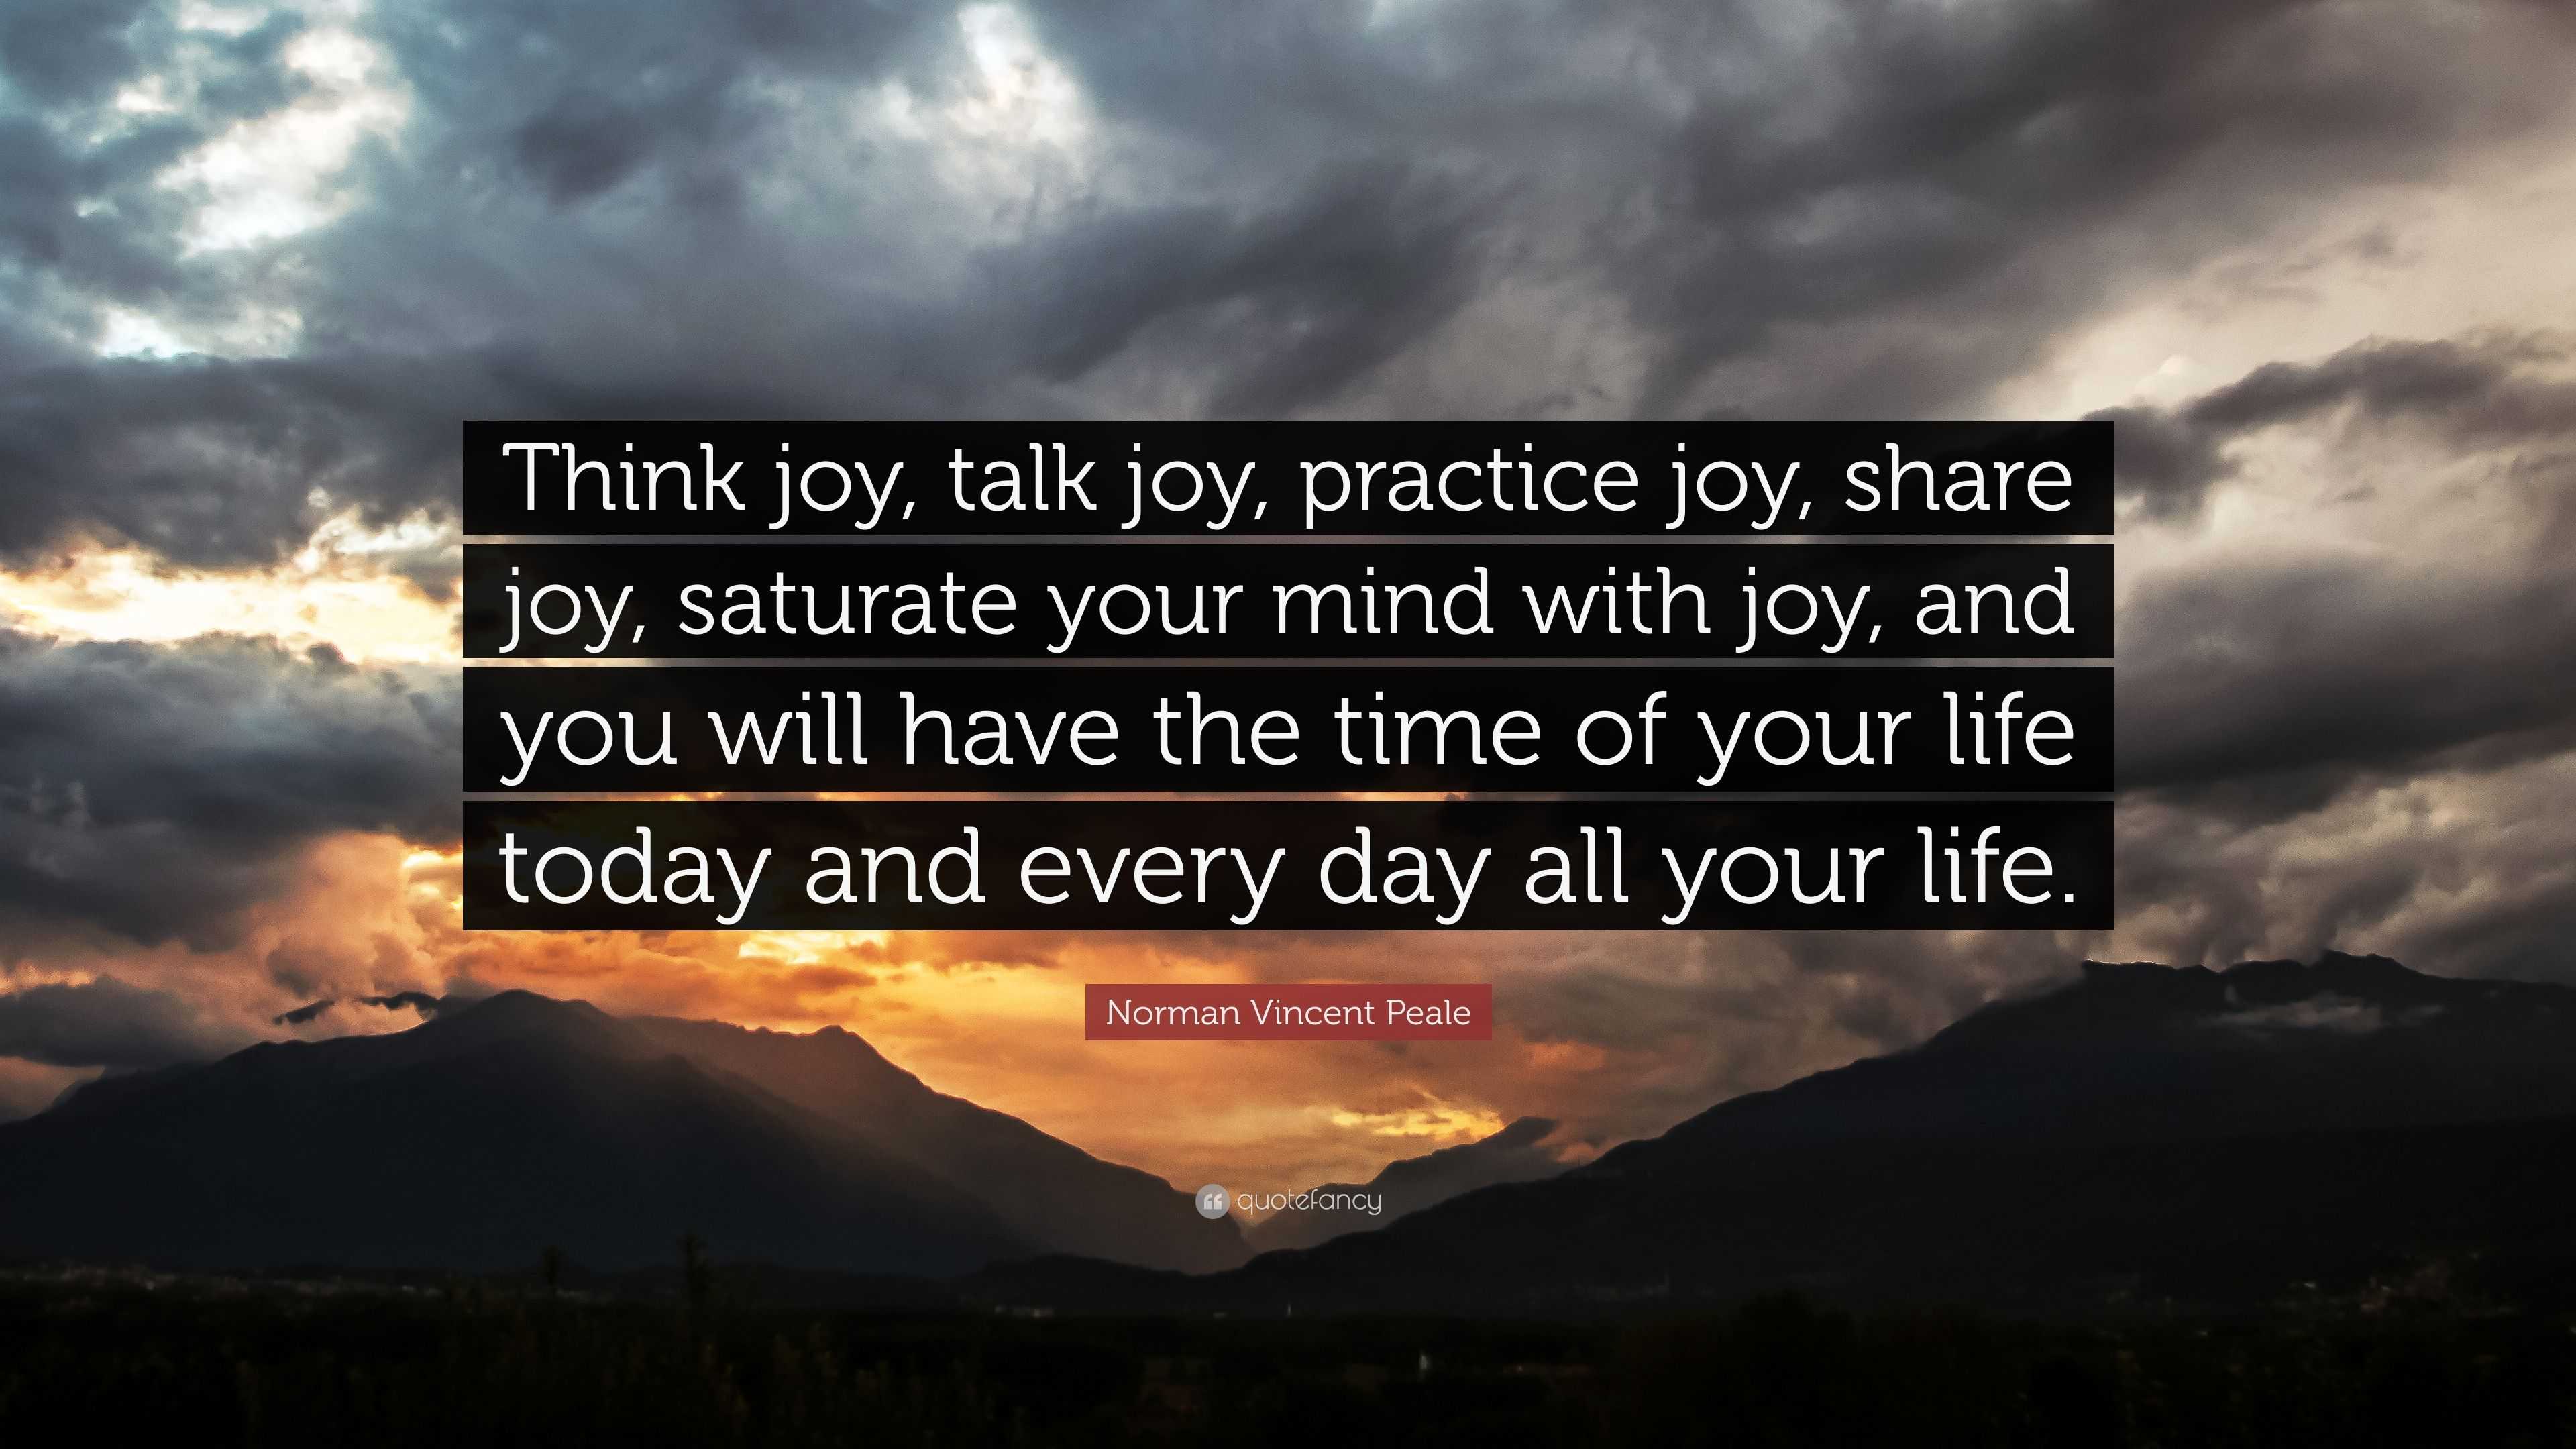 Norman Vincent Peale Quote “Think joy talk joy practice joy share